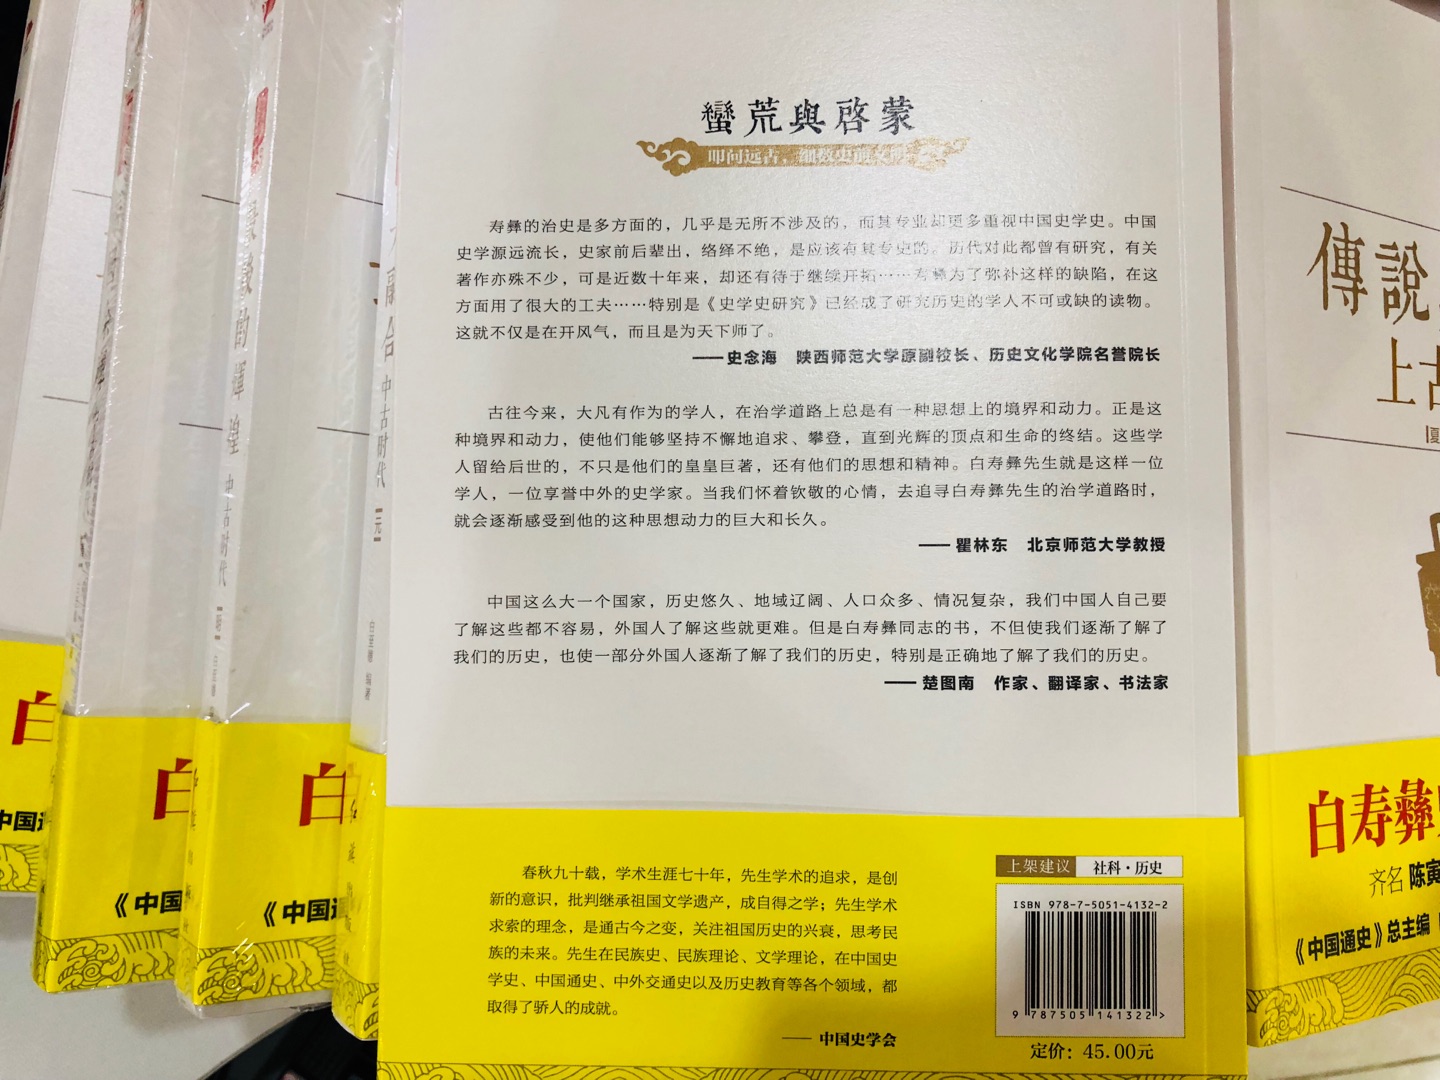 白寿彝的《中国通史》是部大书，看着有难度，这套书就会易懂一些。对近代史非常感兴趣，因此先看 了这本《近代前编》，书中的历史观点还是很正统很主流的，不会误导青少年。